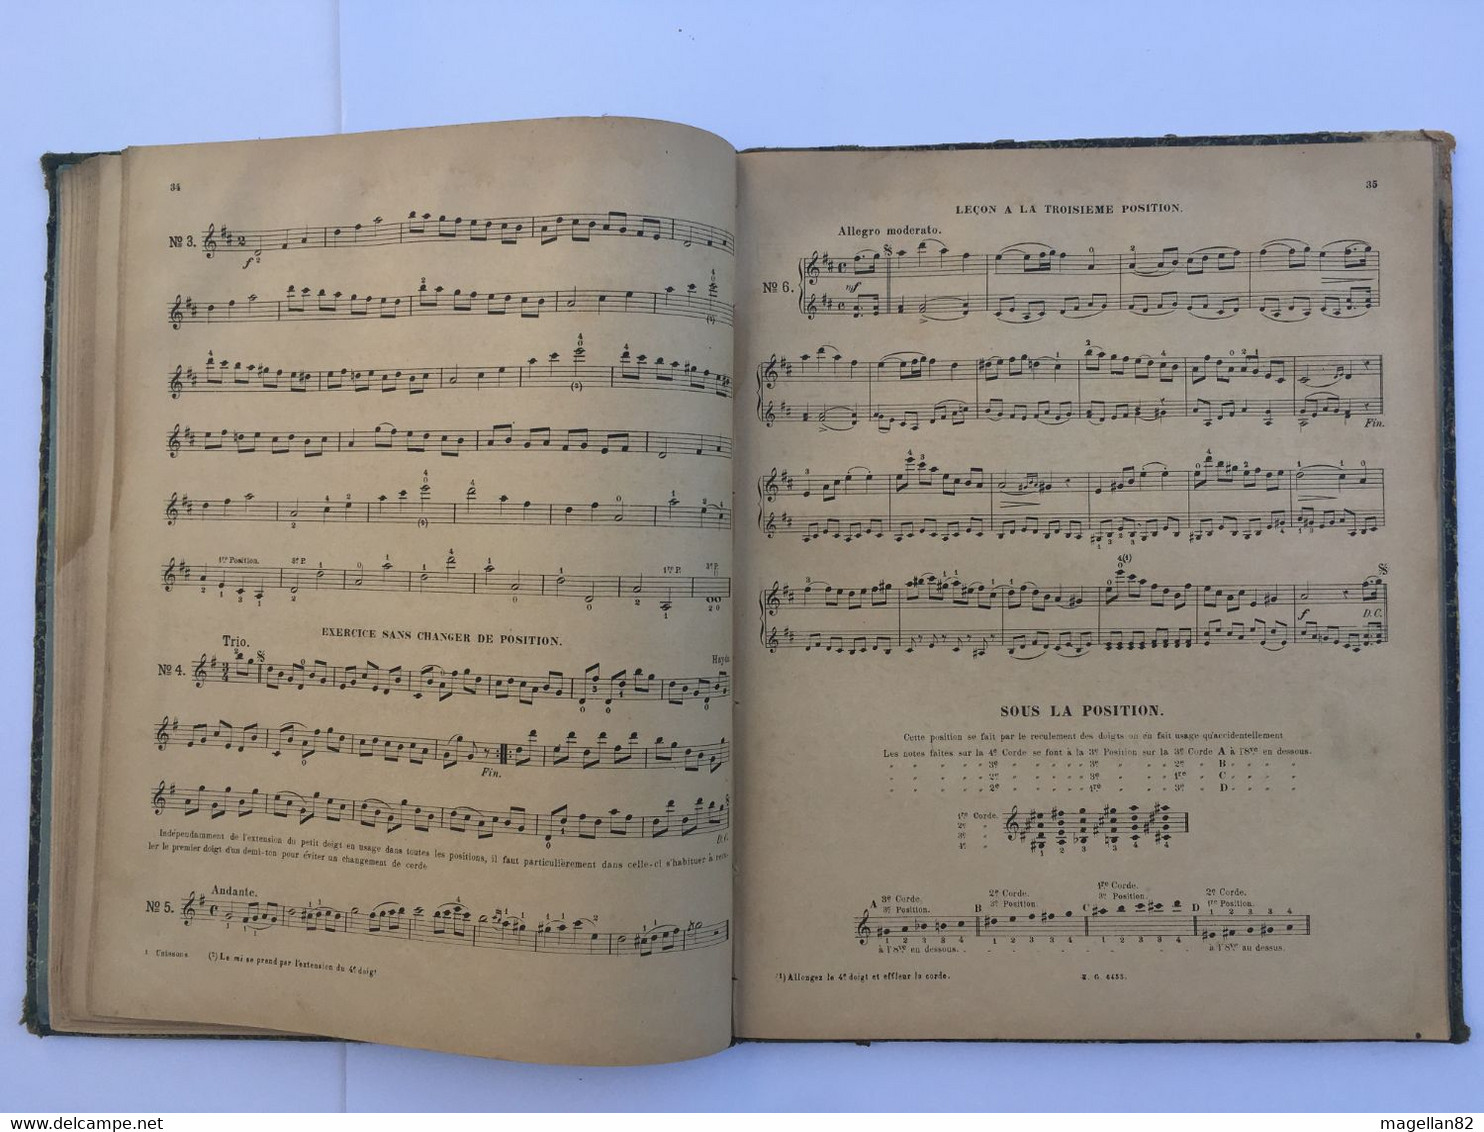 Méthode de Violon par F. MAZAS. Partition. Archet. Note de Musique. Gammes. Violoniste. Solfège